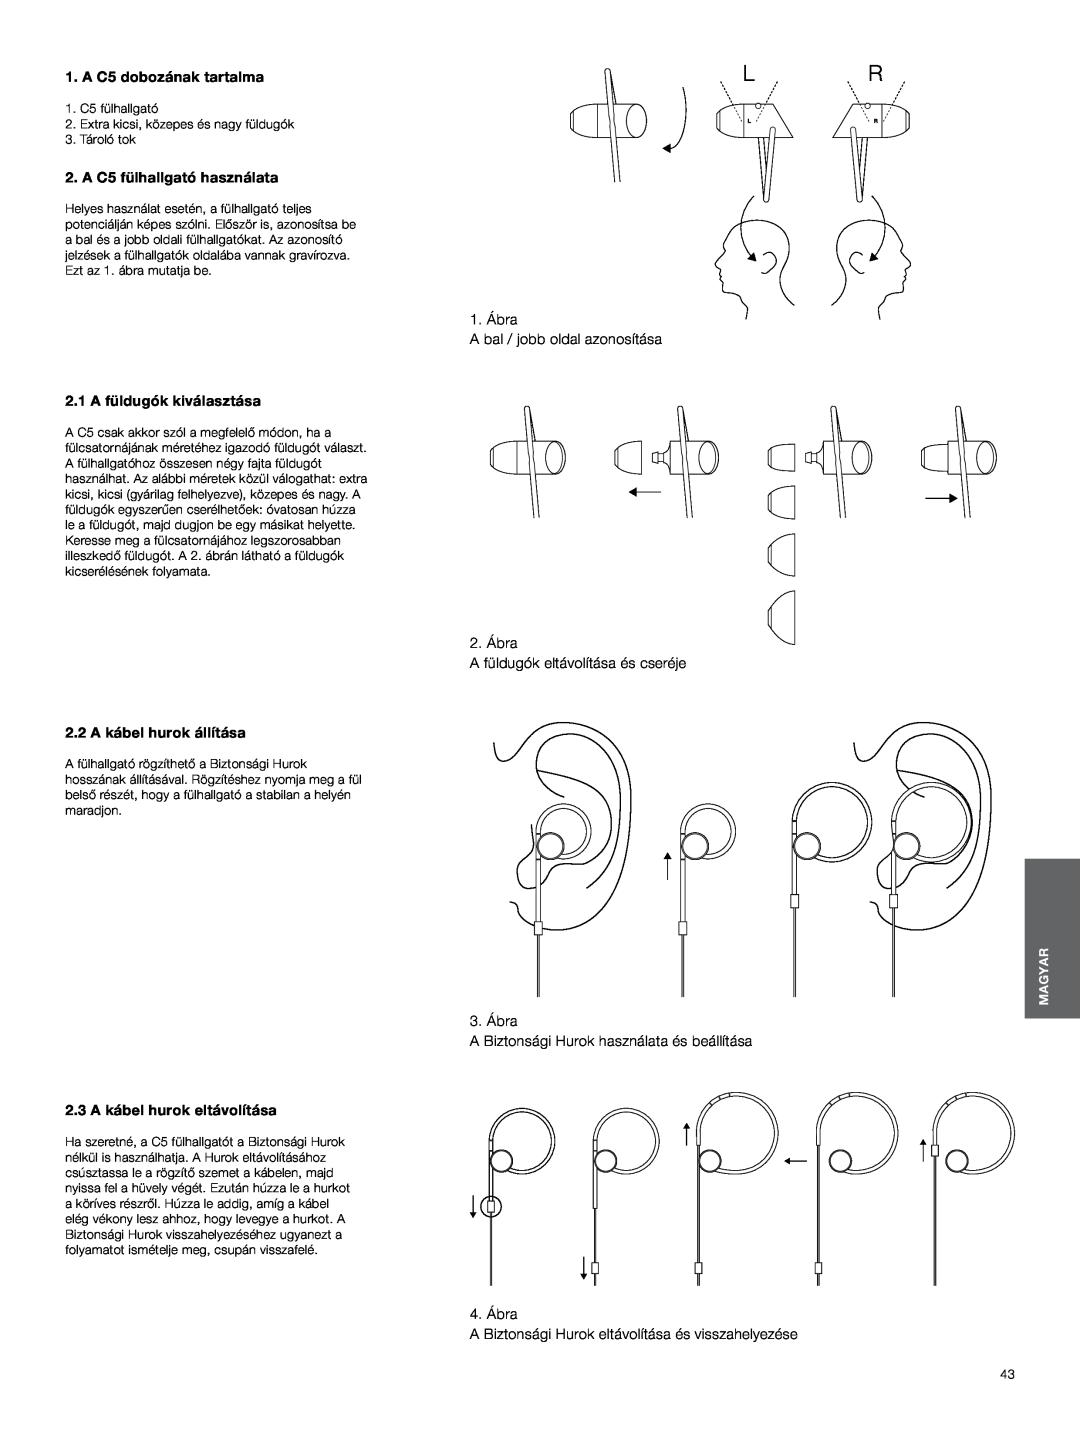 Bowers & Wilkins A C5 dobozának tartalma, A C5 fülhallgató használata, 1. Ábra A bal / jobb oldal azonosítása, 3. Ábra 